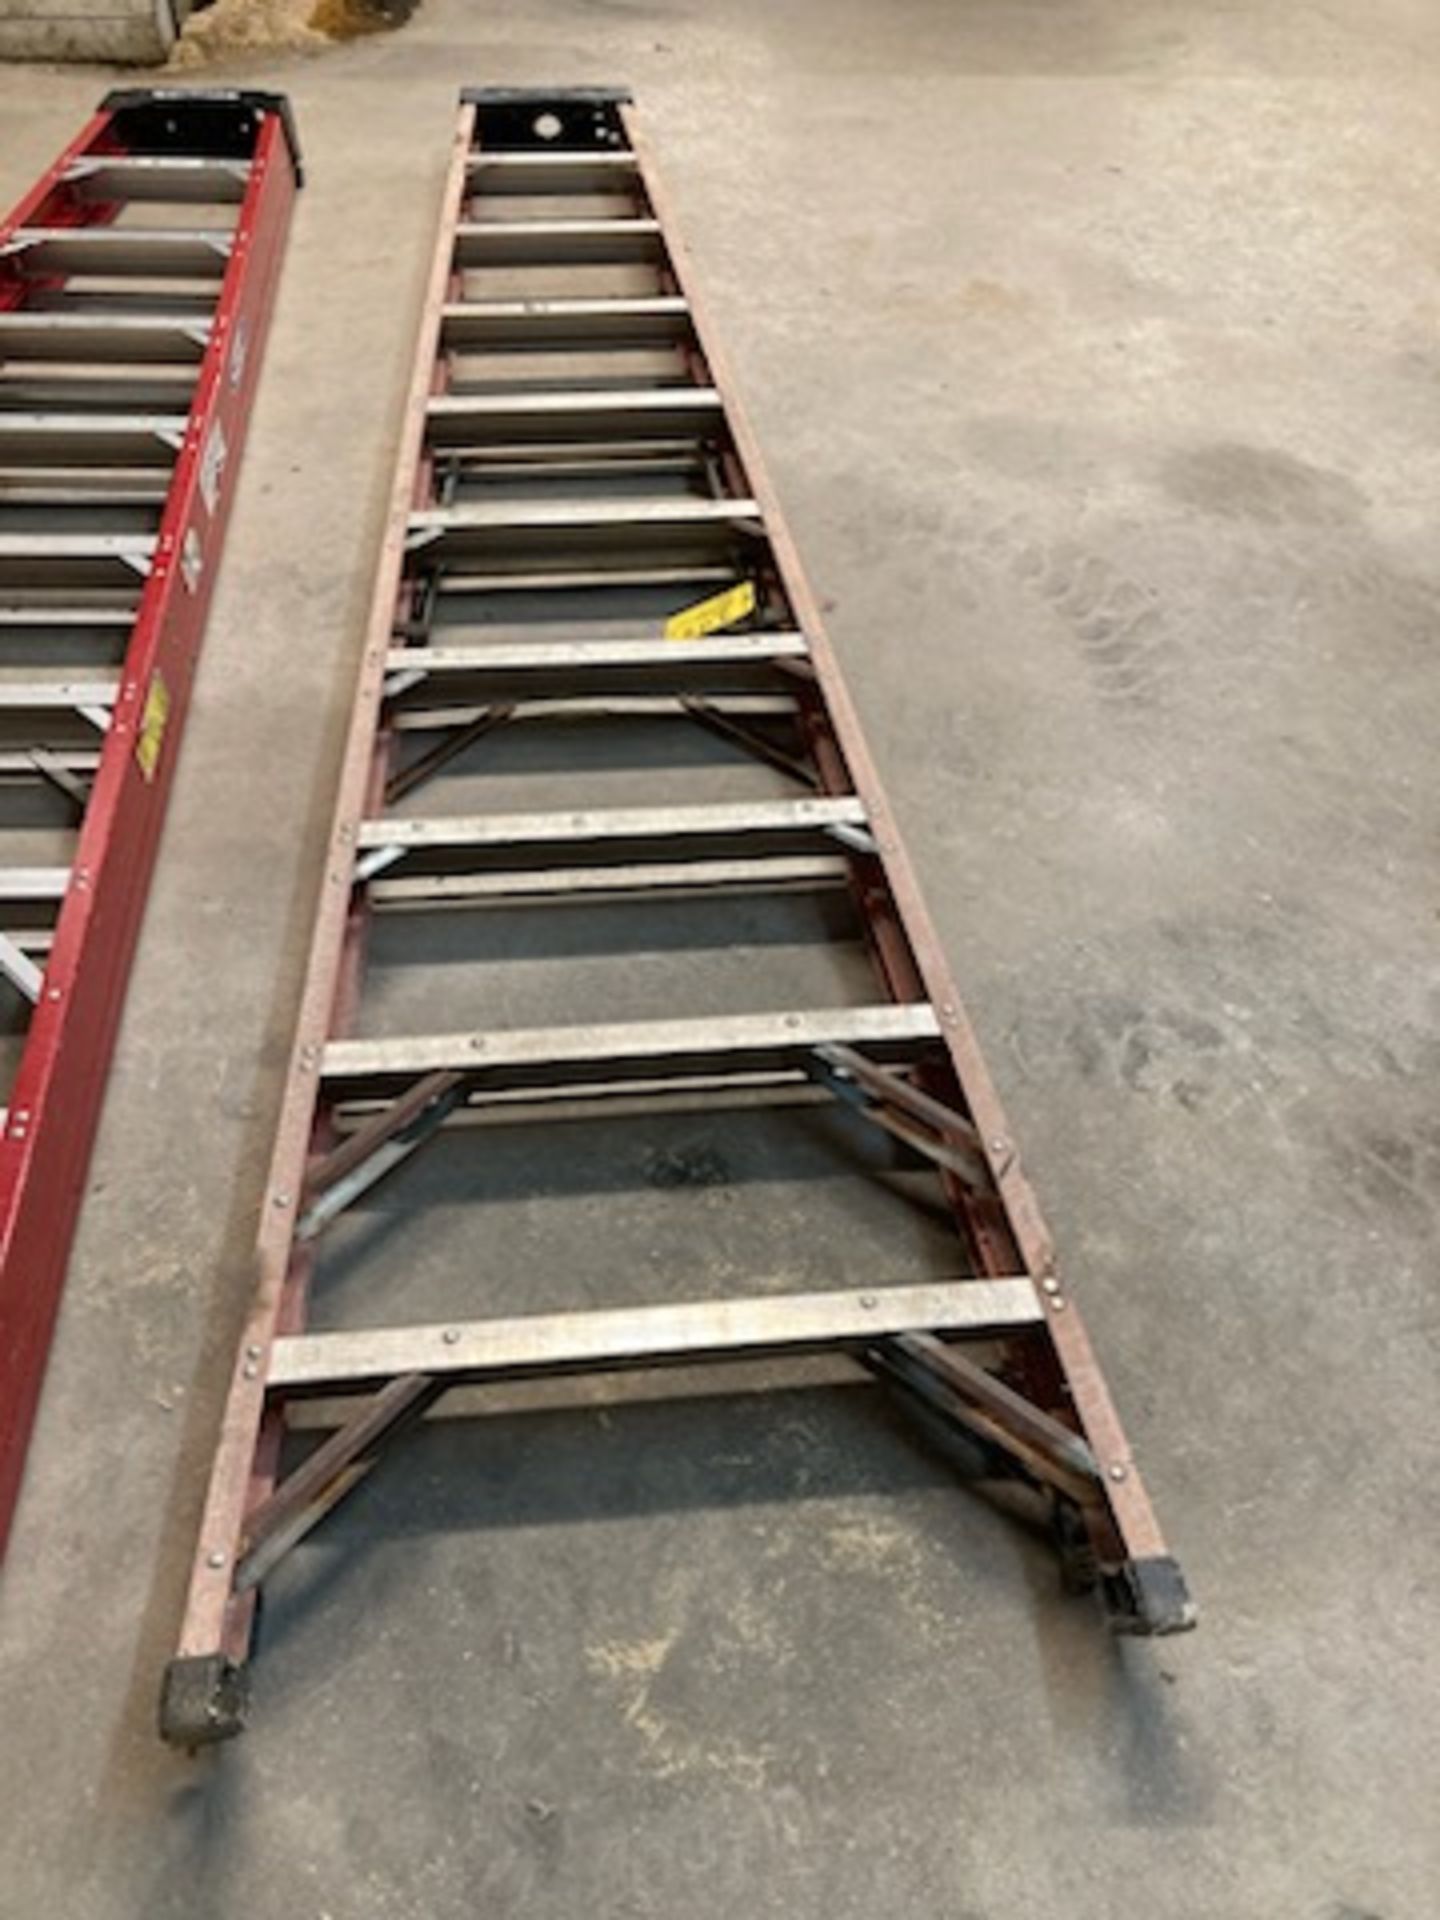 Werner step ladder, 12 ft. - Image 2 of 2